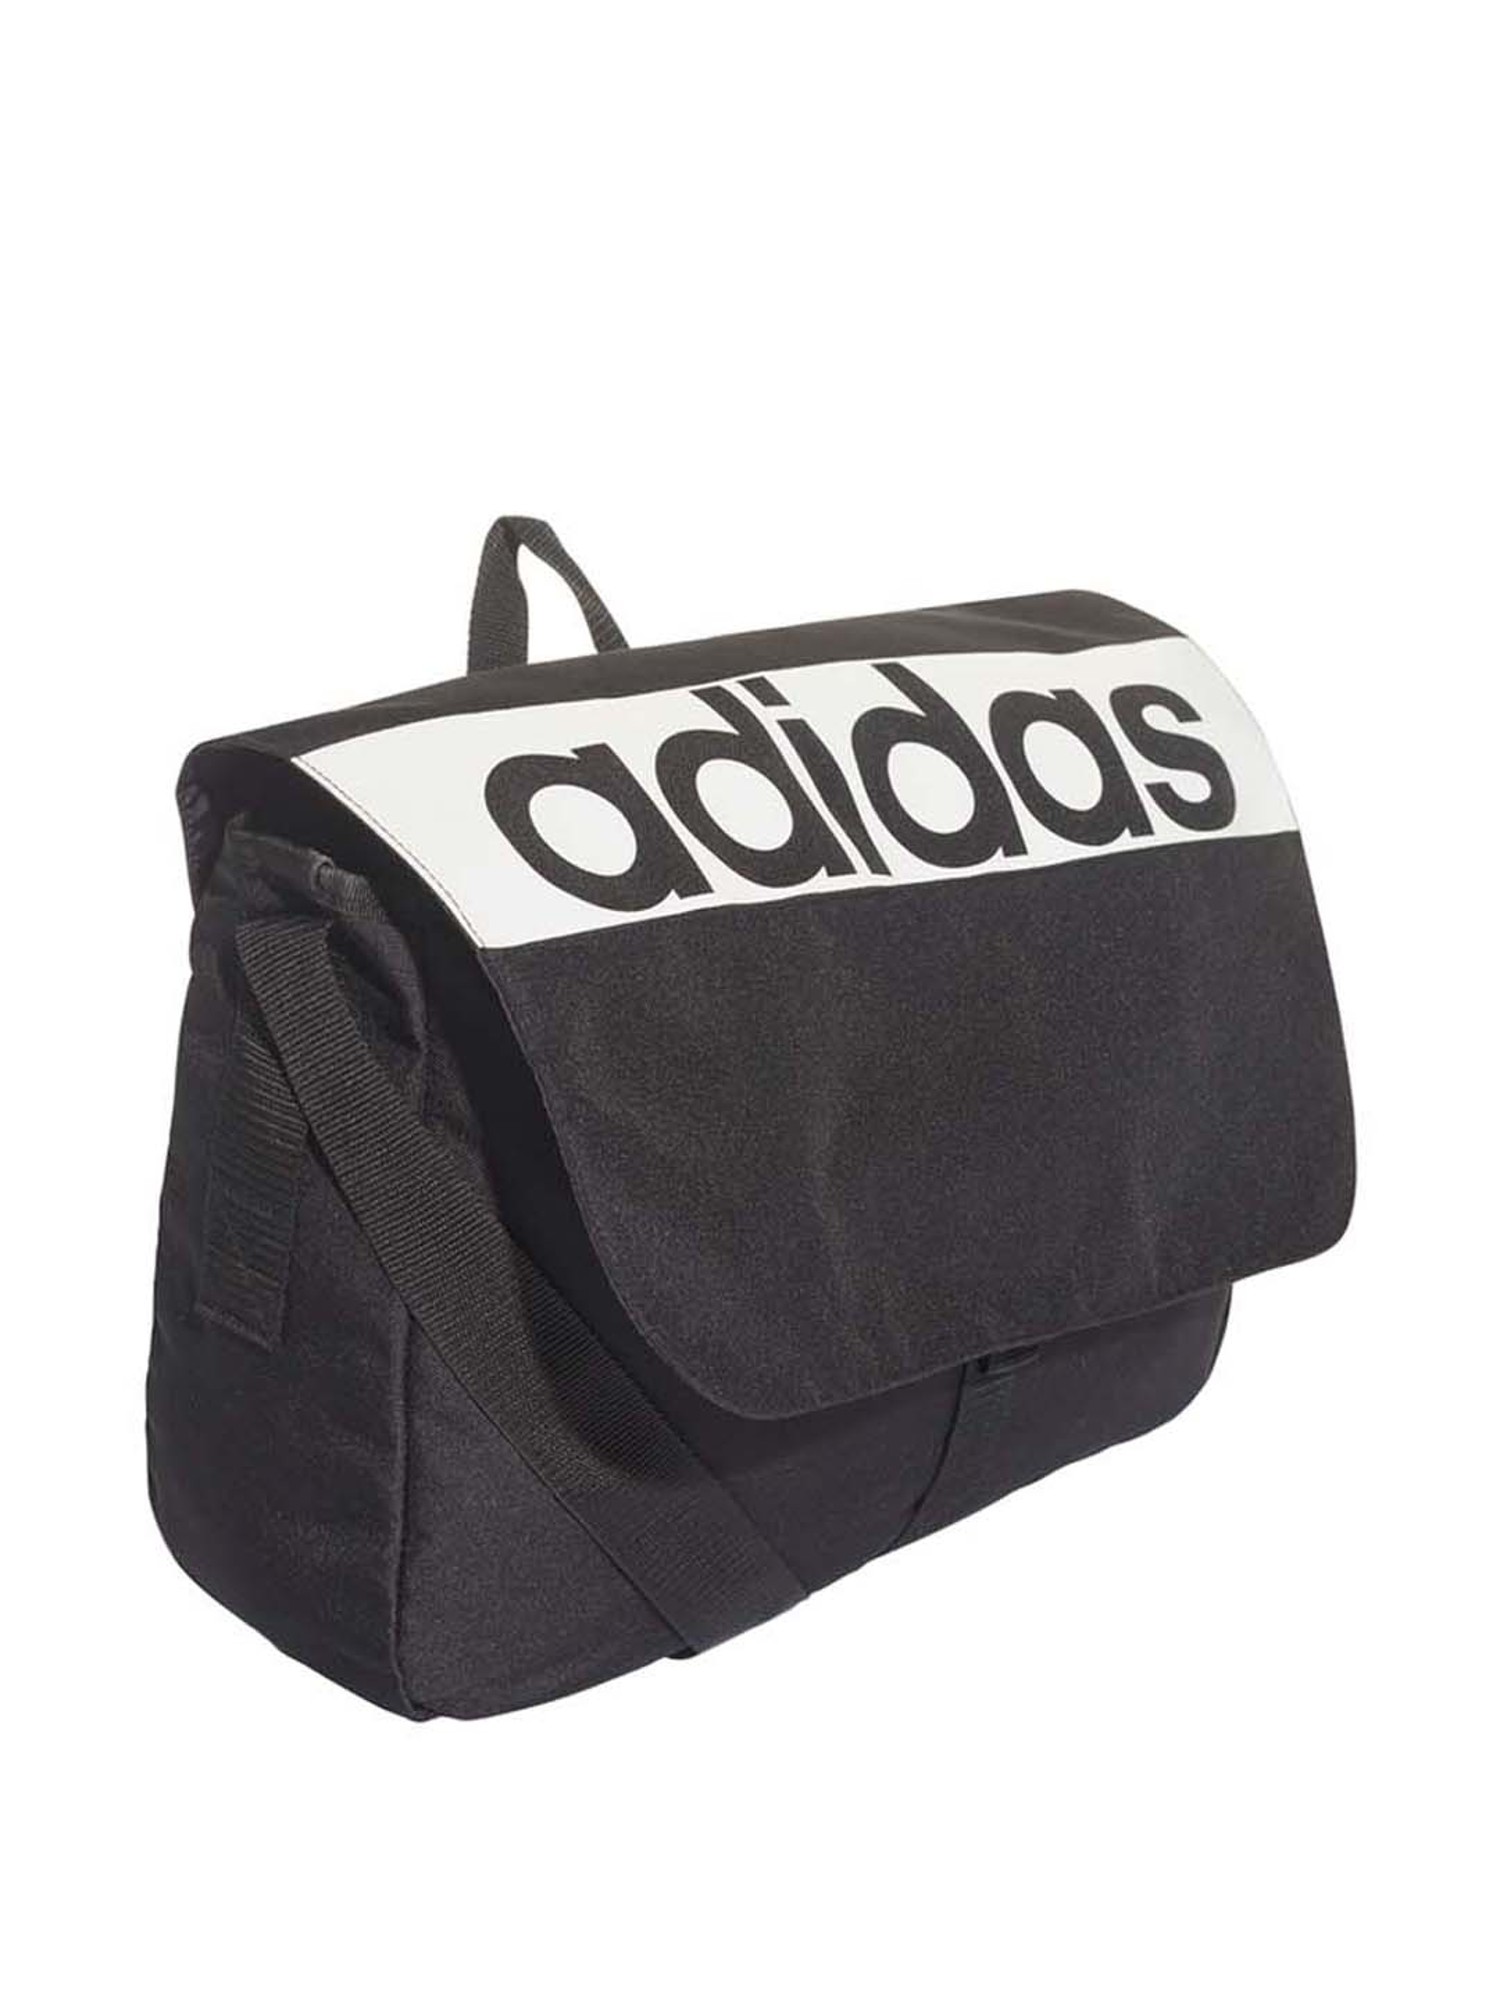 Adidas Black Messenger Bags  Mercari